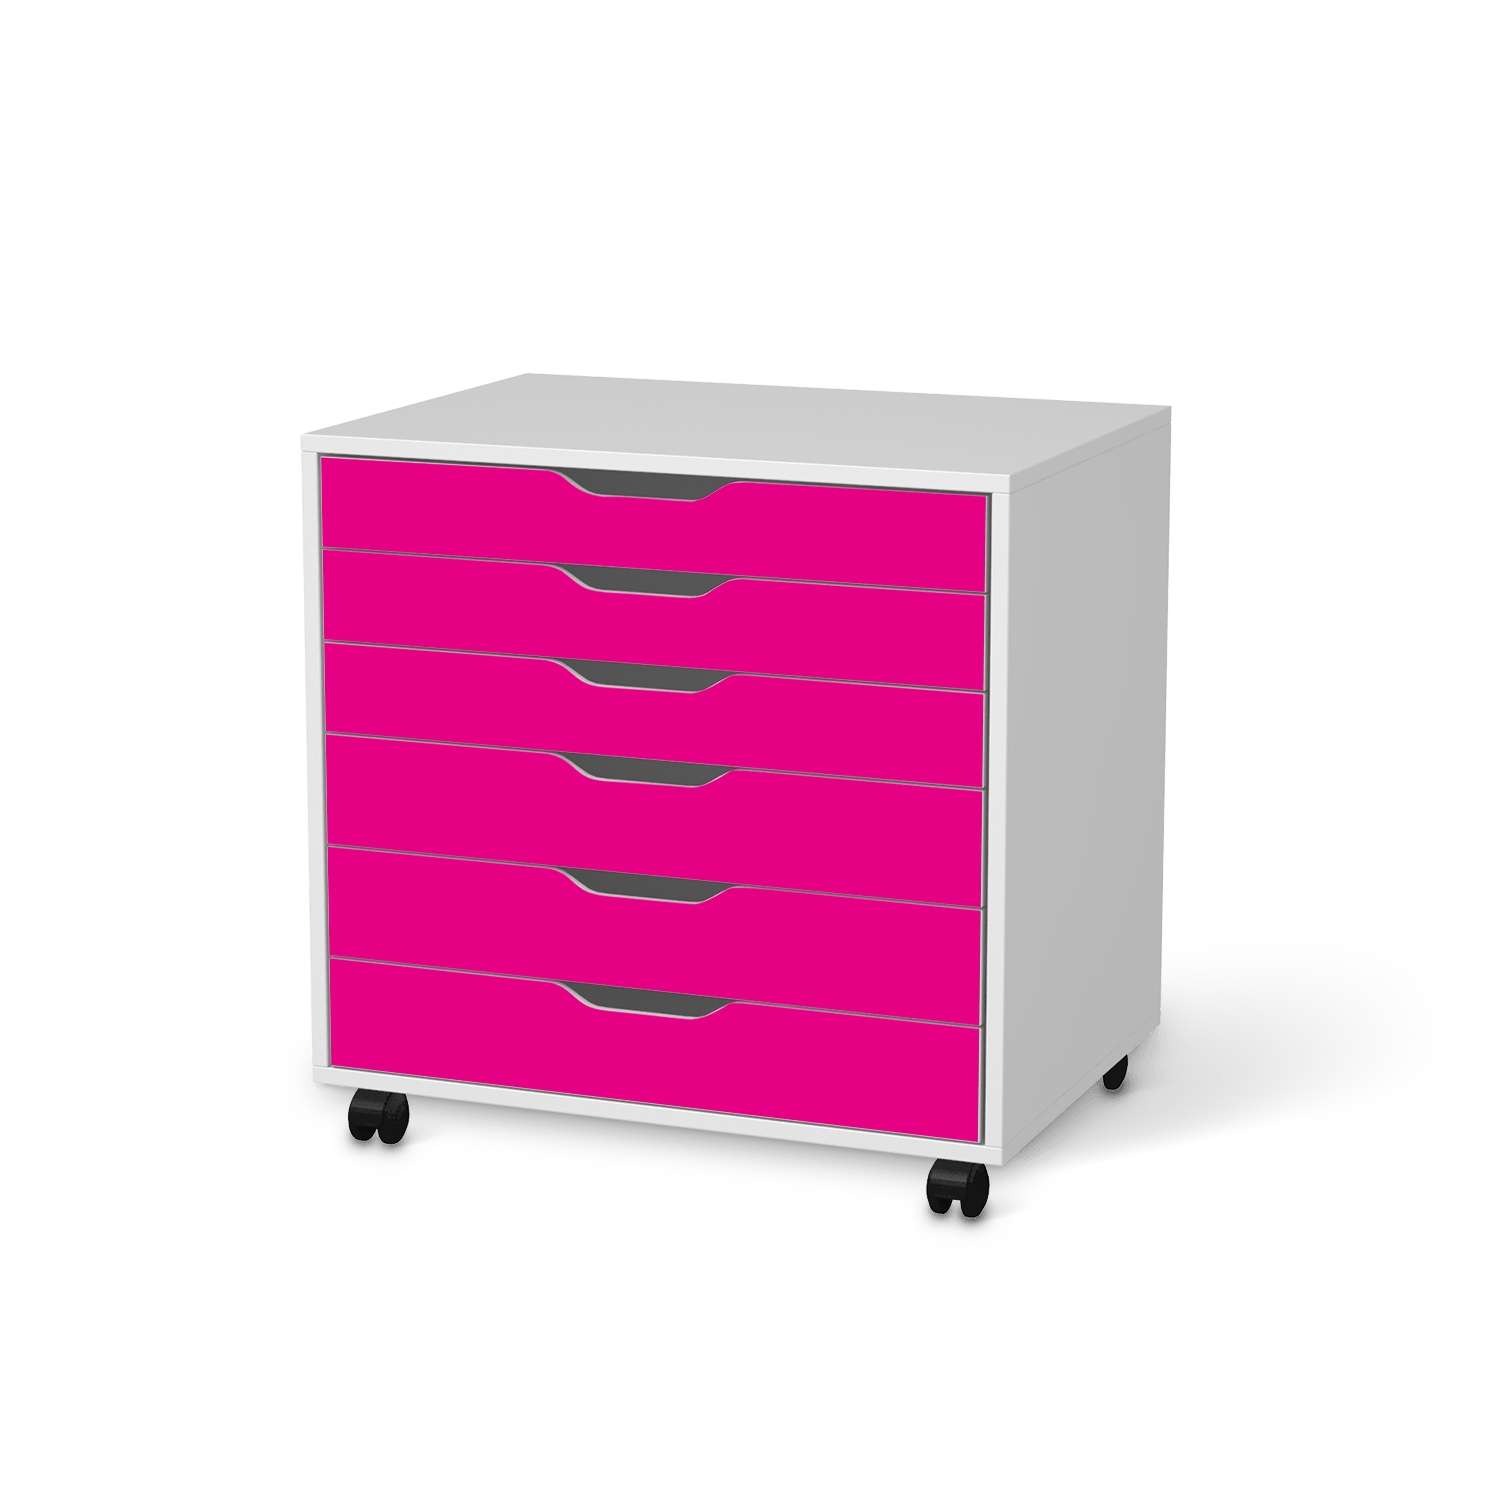 M?belfolie IKEA Alex Rollcontainer 6 Schubladen - Design: Pink Dark von creatisto